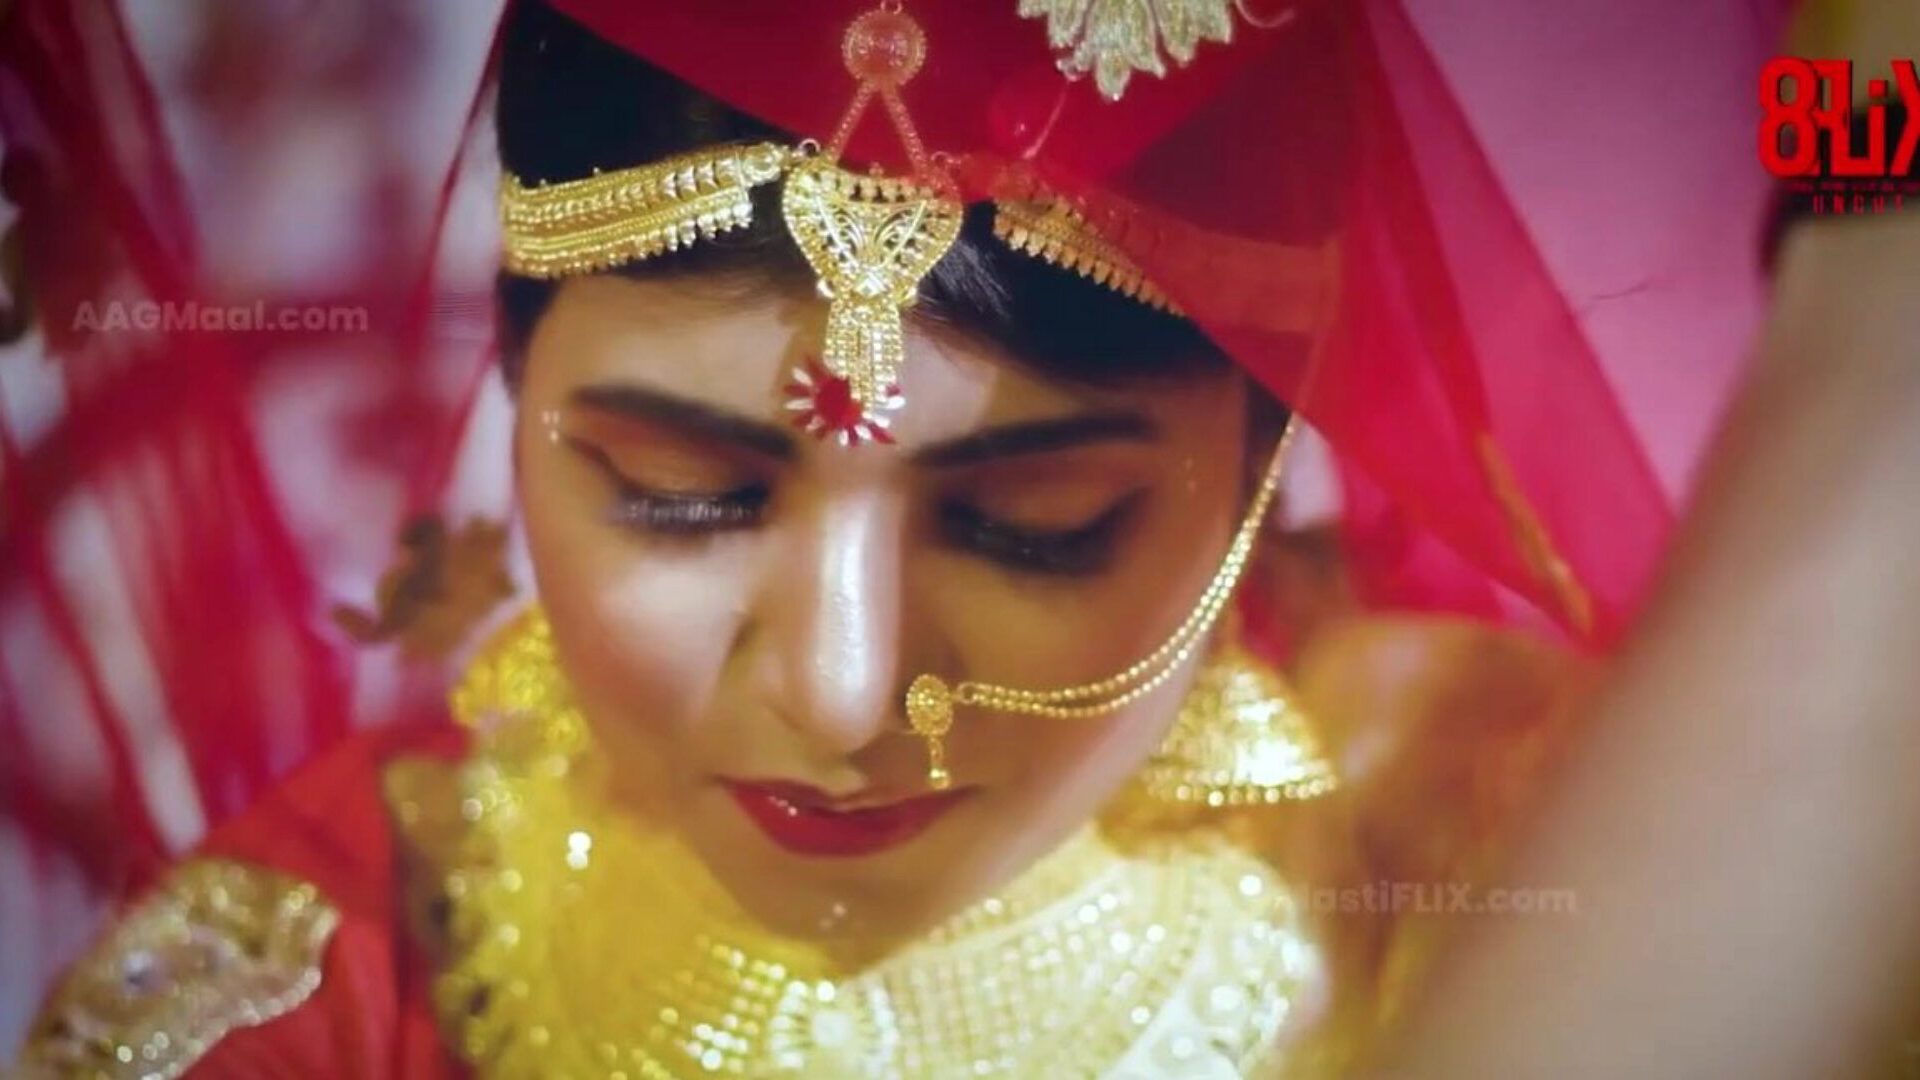 Bebo casamento sem cortes - próximo nível de séries indianas da web